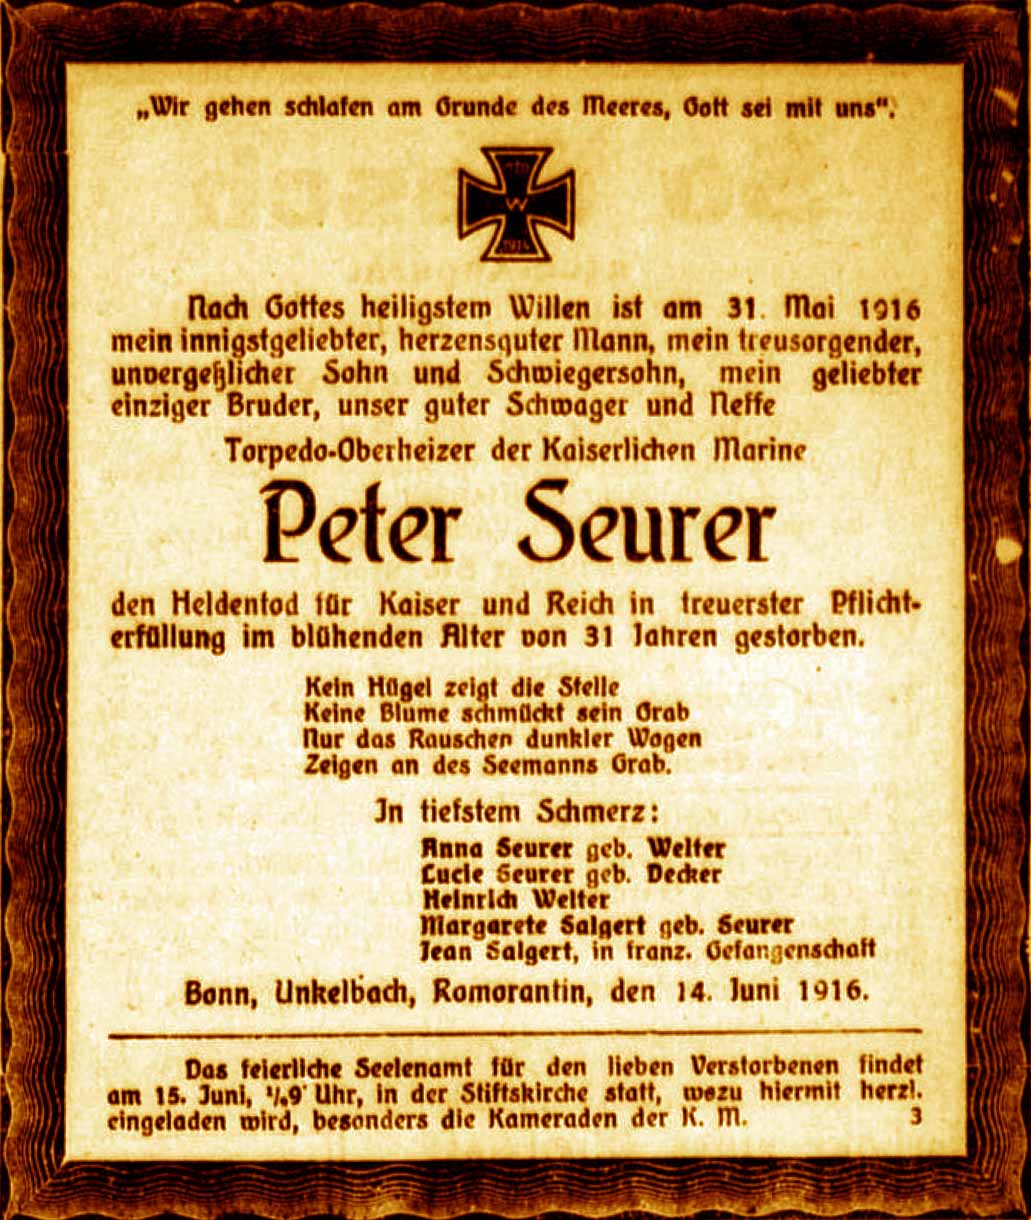 Anzeige im General-Anzeiger vom 14. Juni 1916